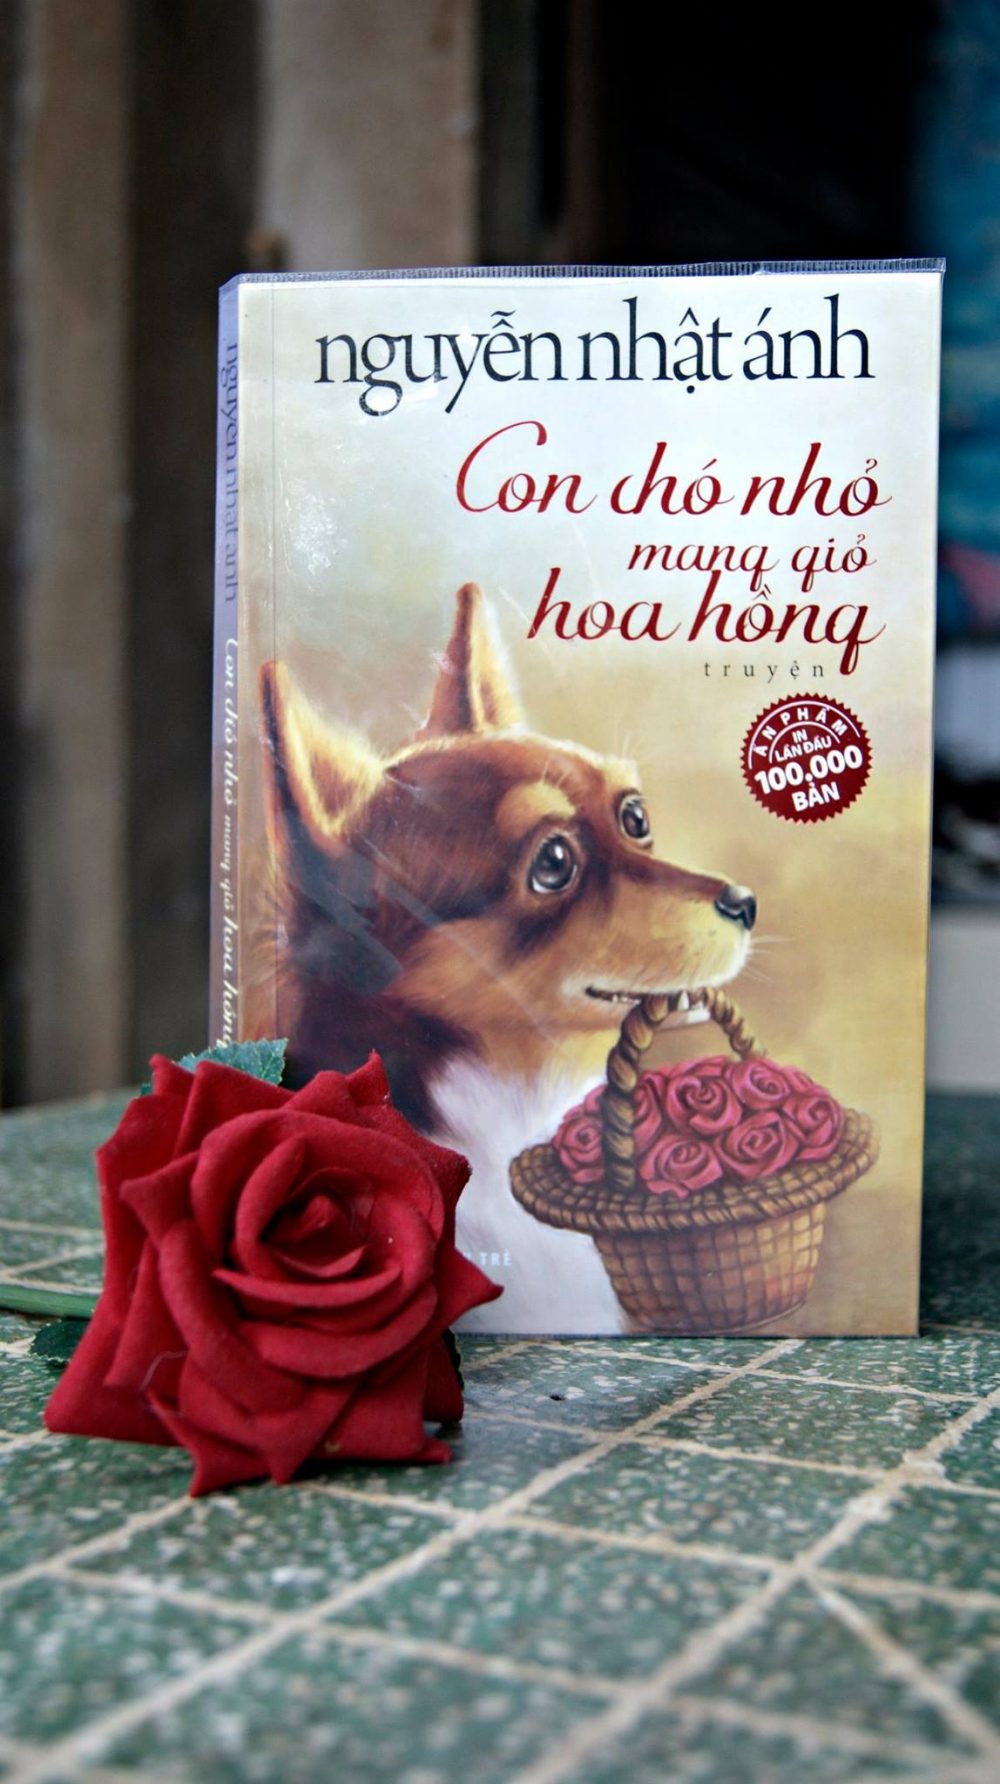 trang bia sach con cho nho mang gio hoa hong e1596040534826 - Con chó nhỏ mang giỏ hoa hồng: Lời ước hẹn với tuổi thơ